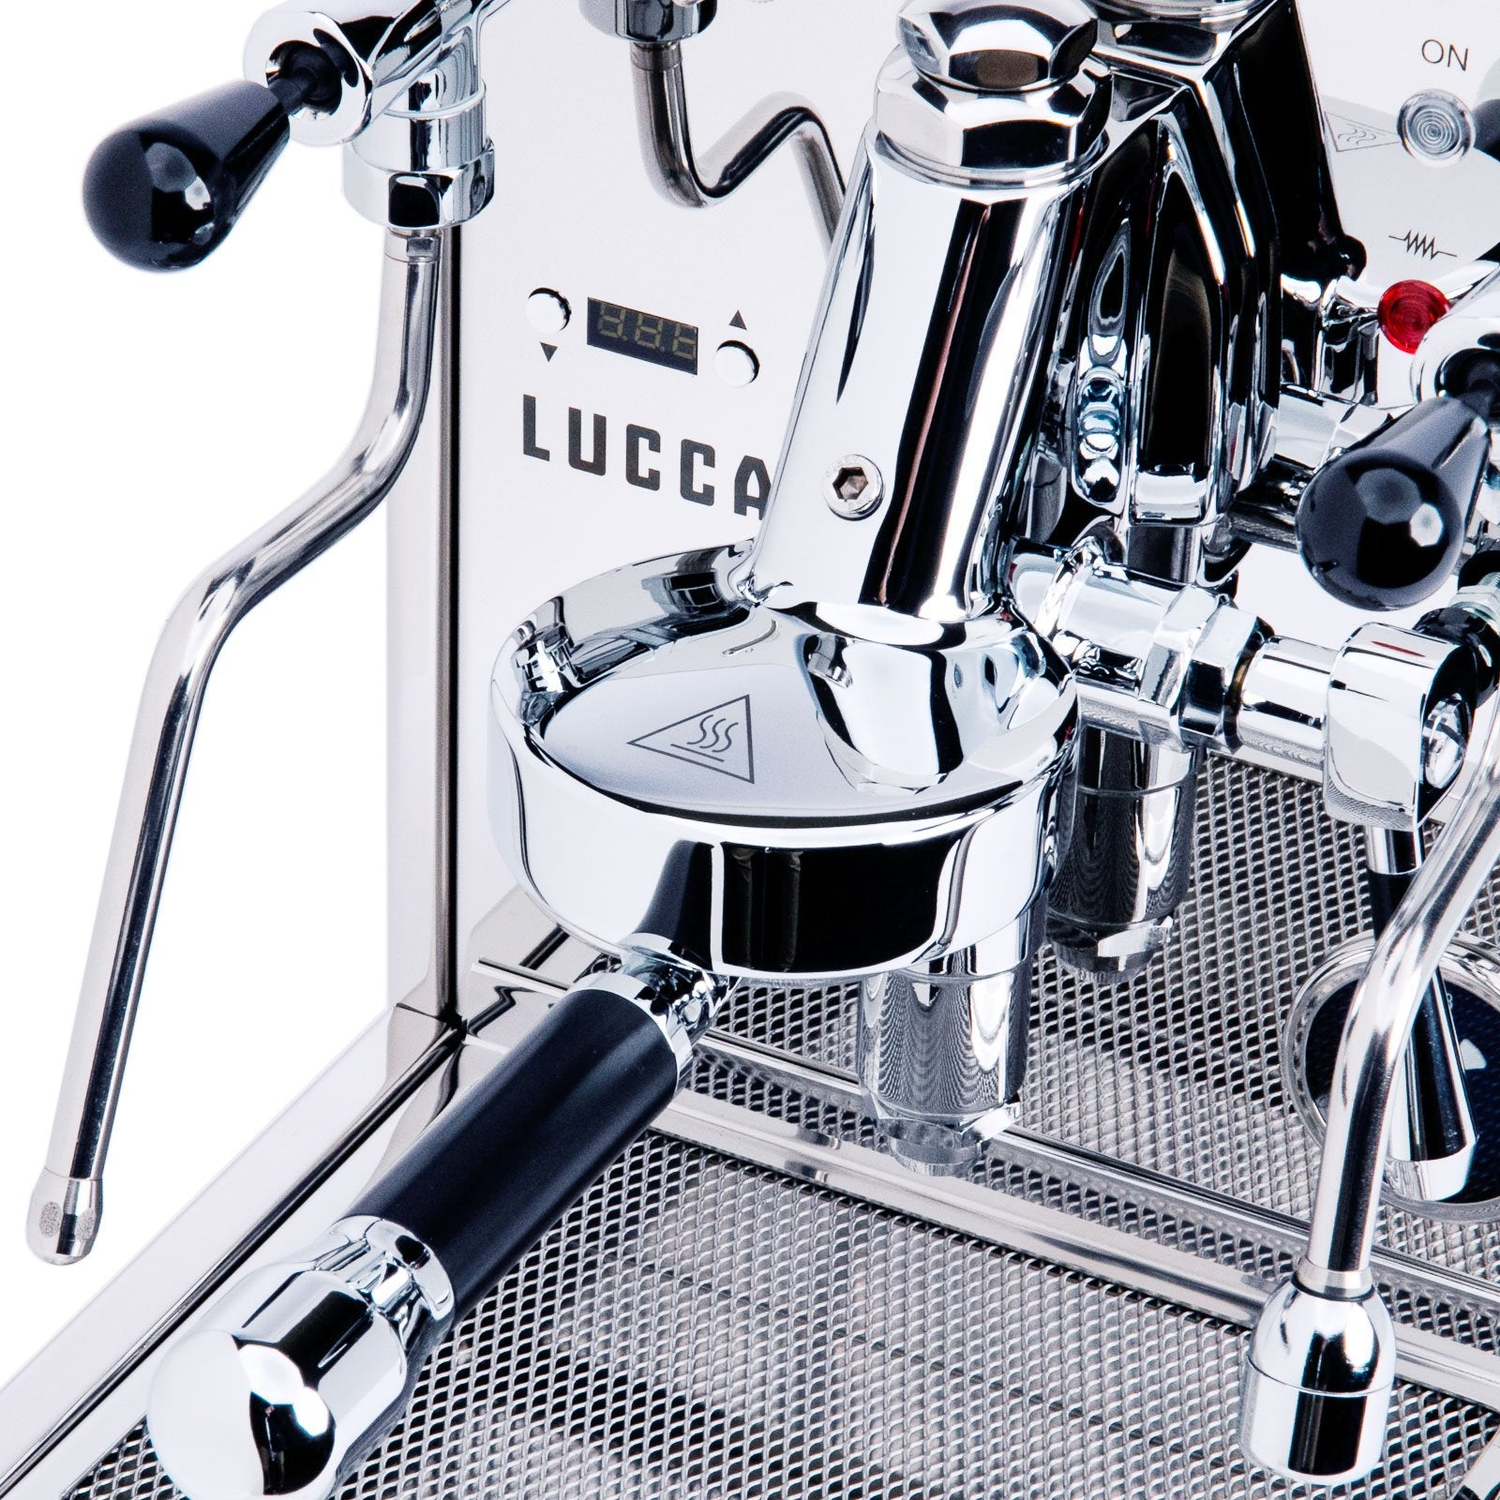 LUCCA Espresso Machines